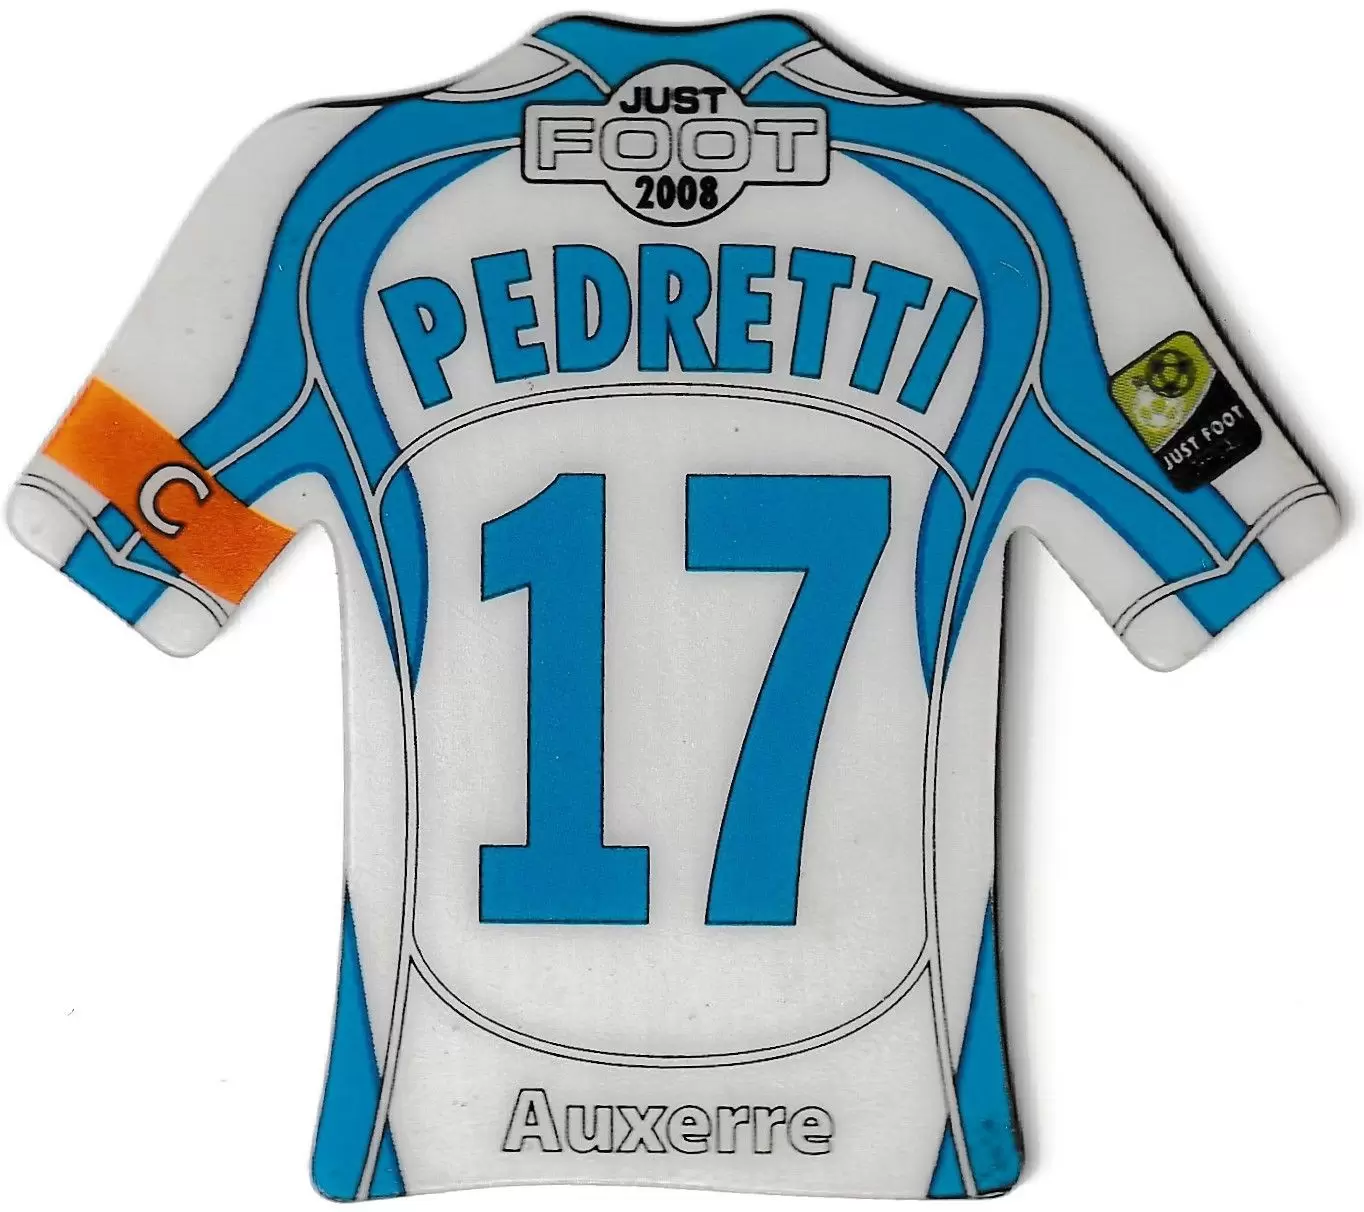 Just Foot 2008 - Auxerre 17 - Pedretti